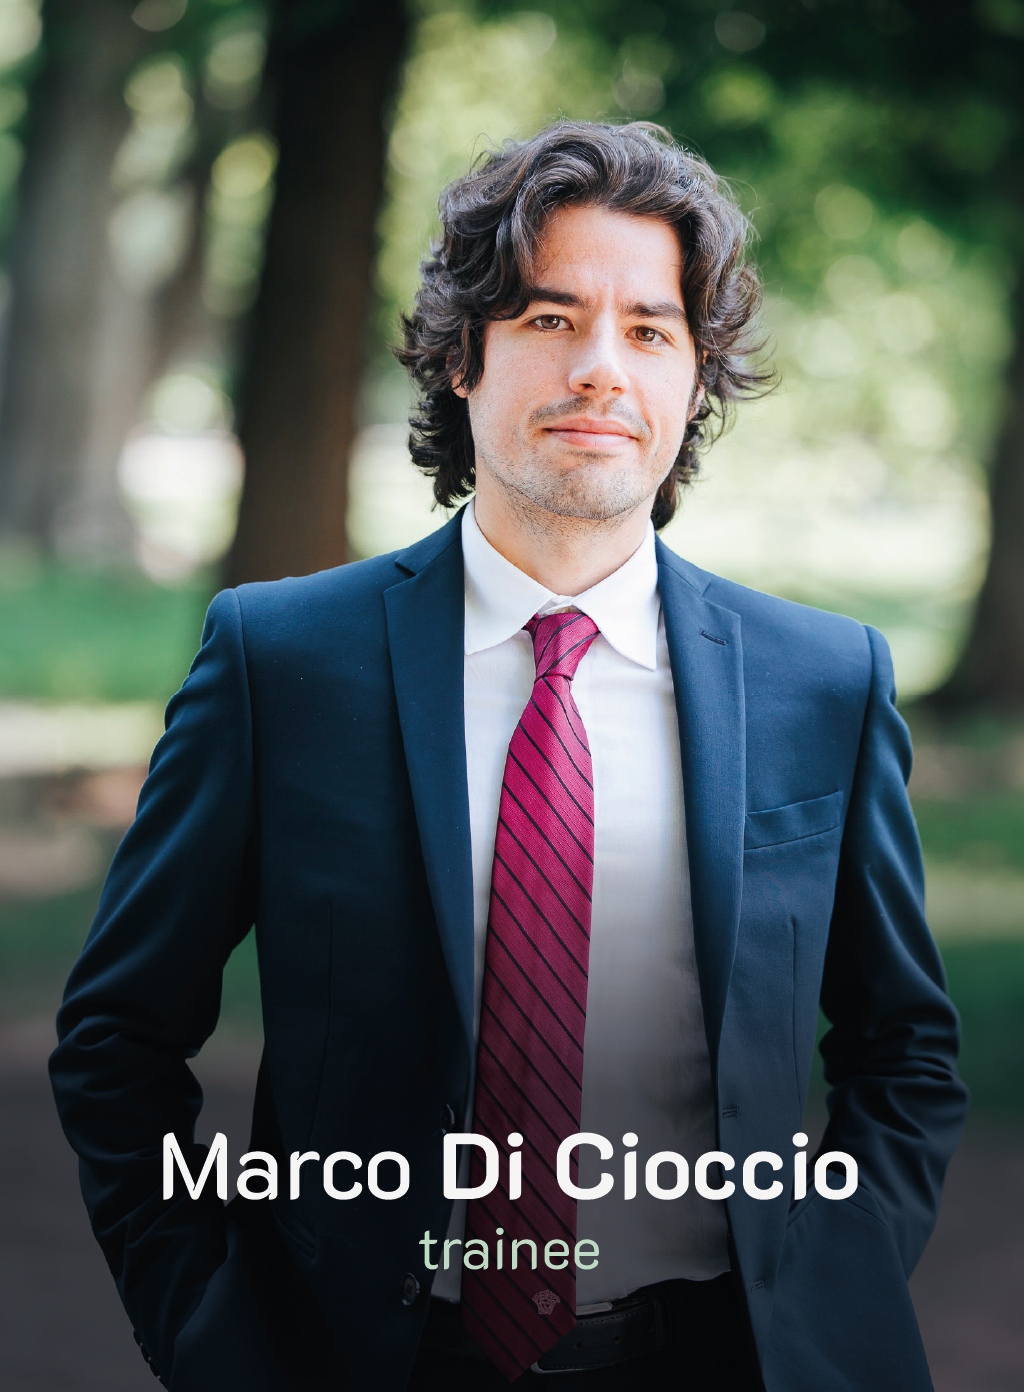 Marco Di Cioccio